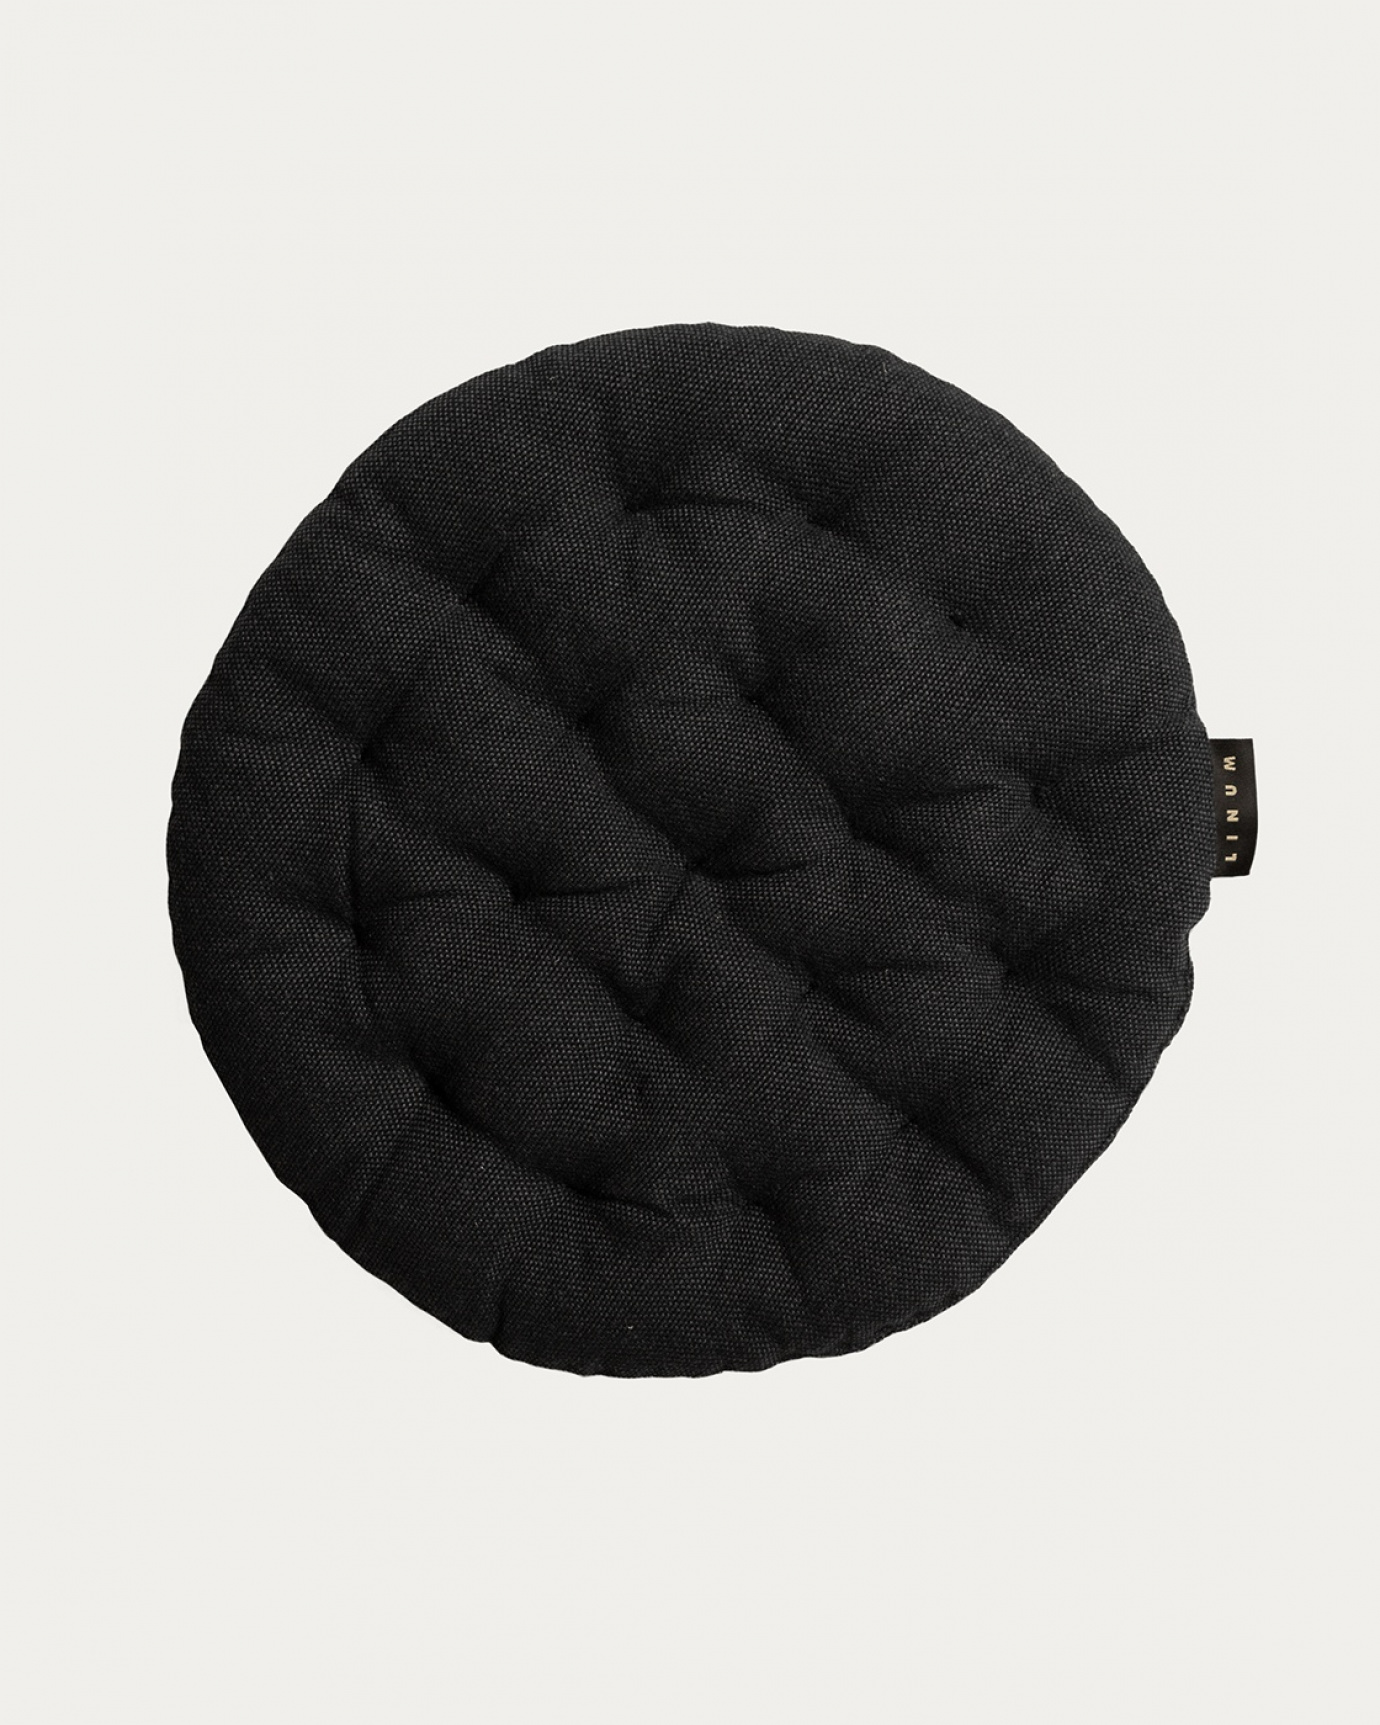 Immagine prodotto nero melange PEPPER cuscini sedie di cotone con imbottitura in poliestere di LINUM DESIGN. Dimensioni ø37 cm.